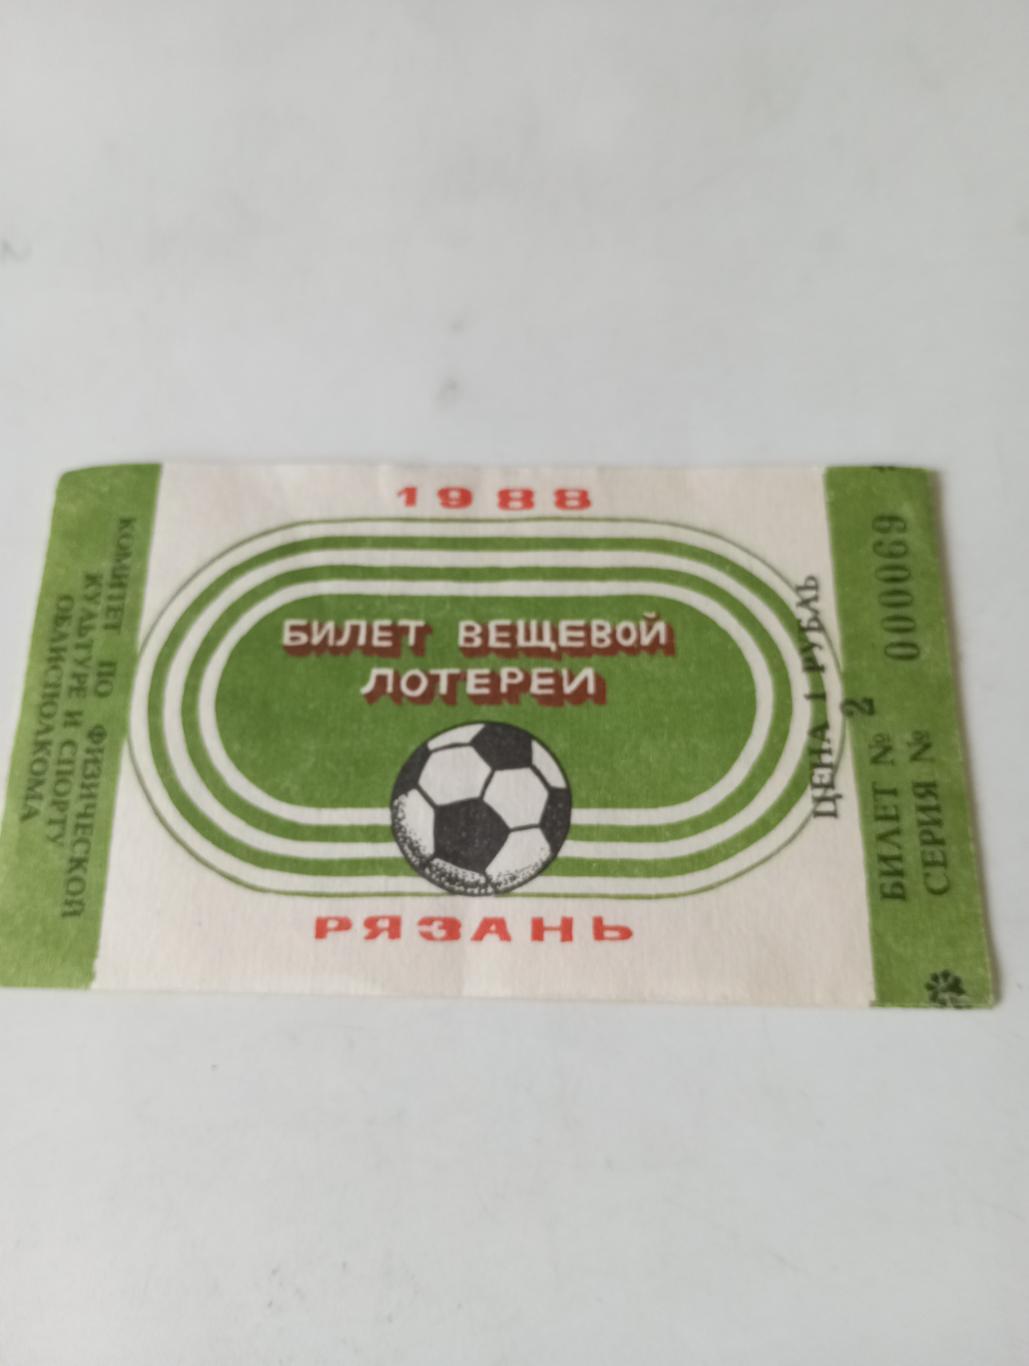 Билет..Рязань 1988 (вещевой лотереи)